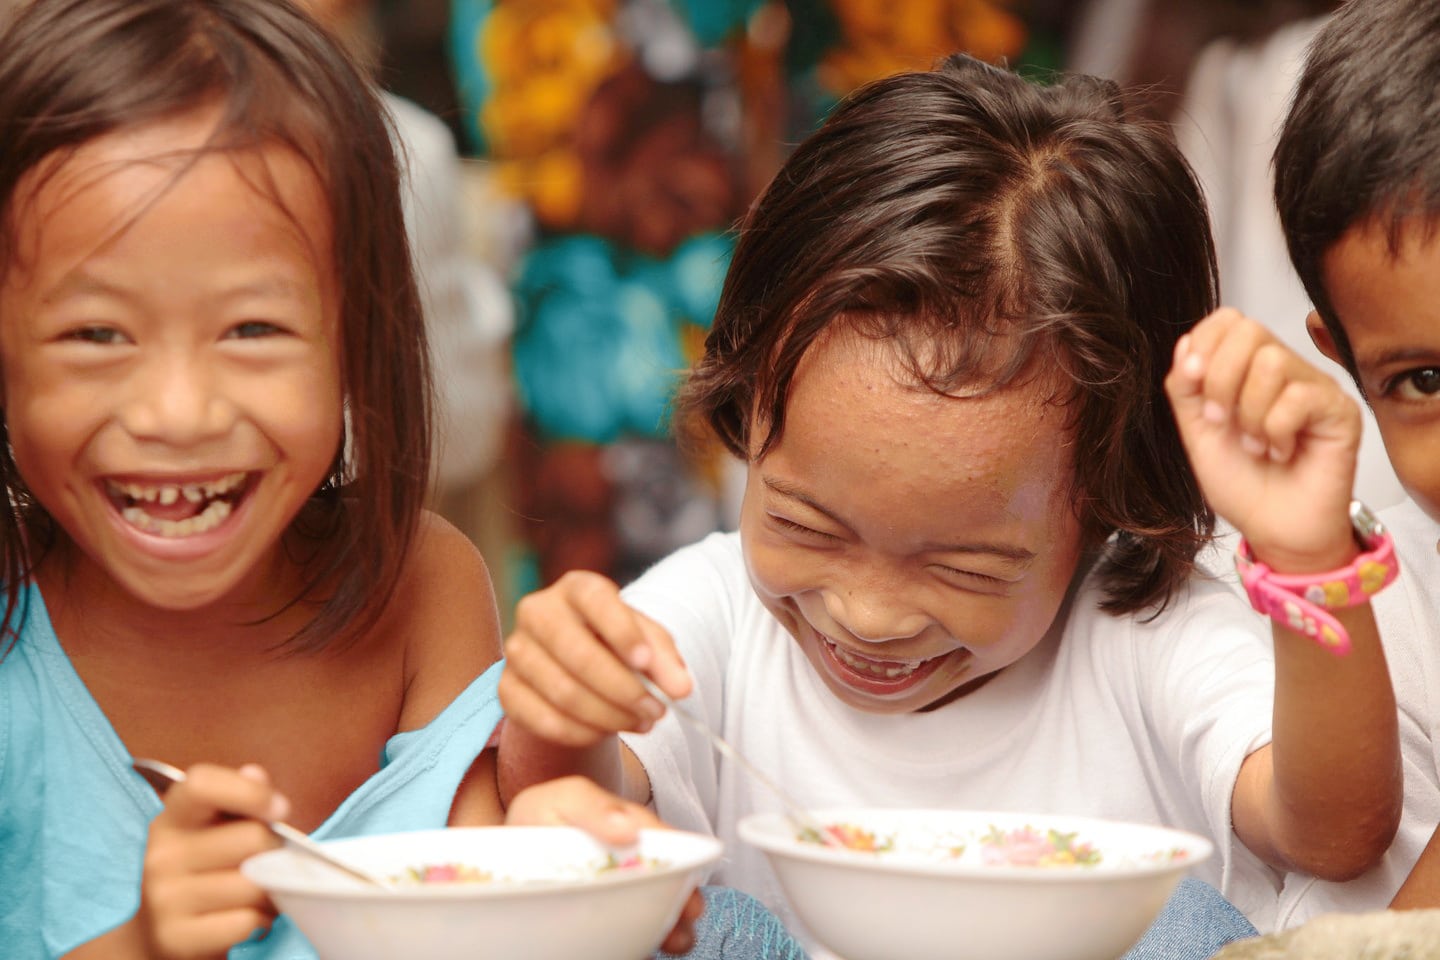 Phillipino children eating